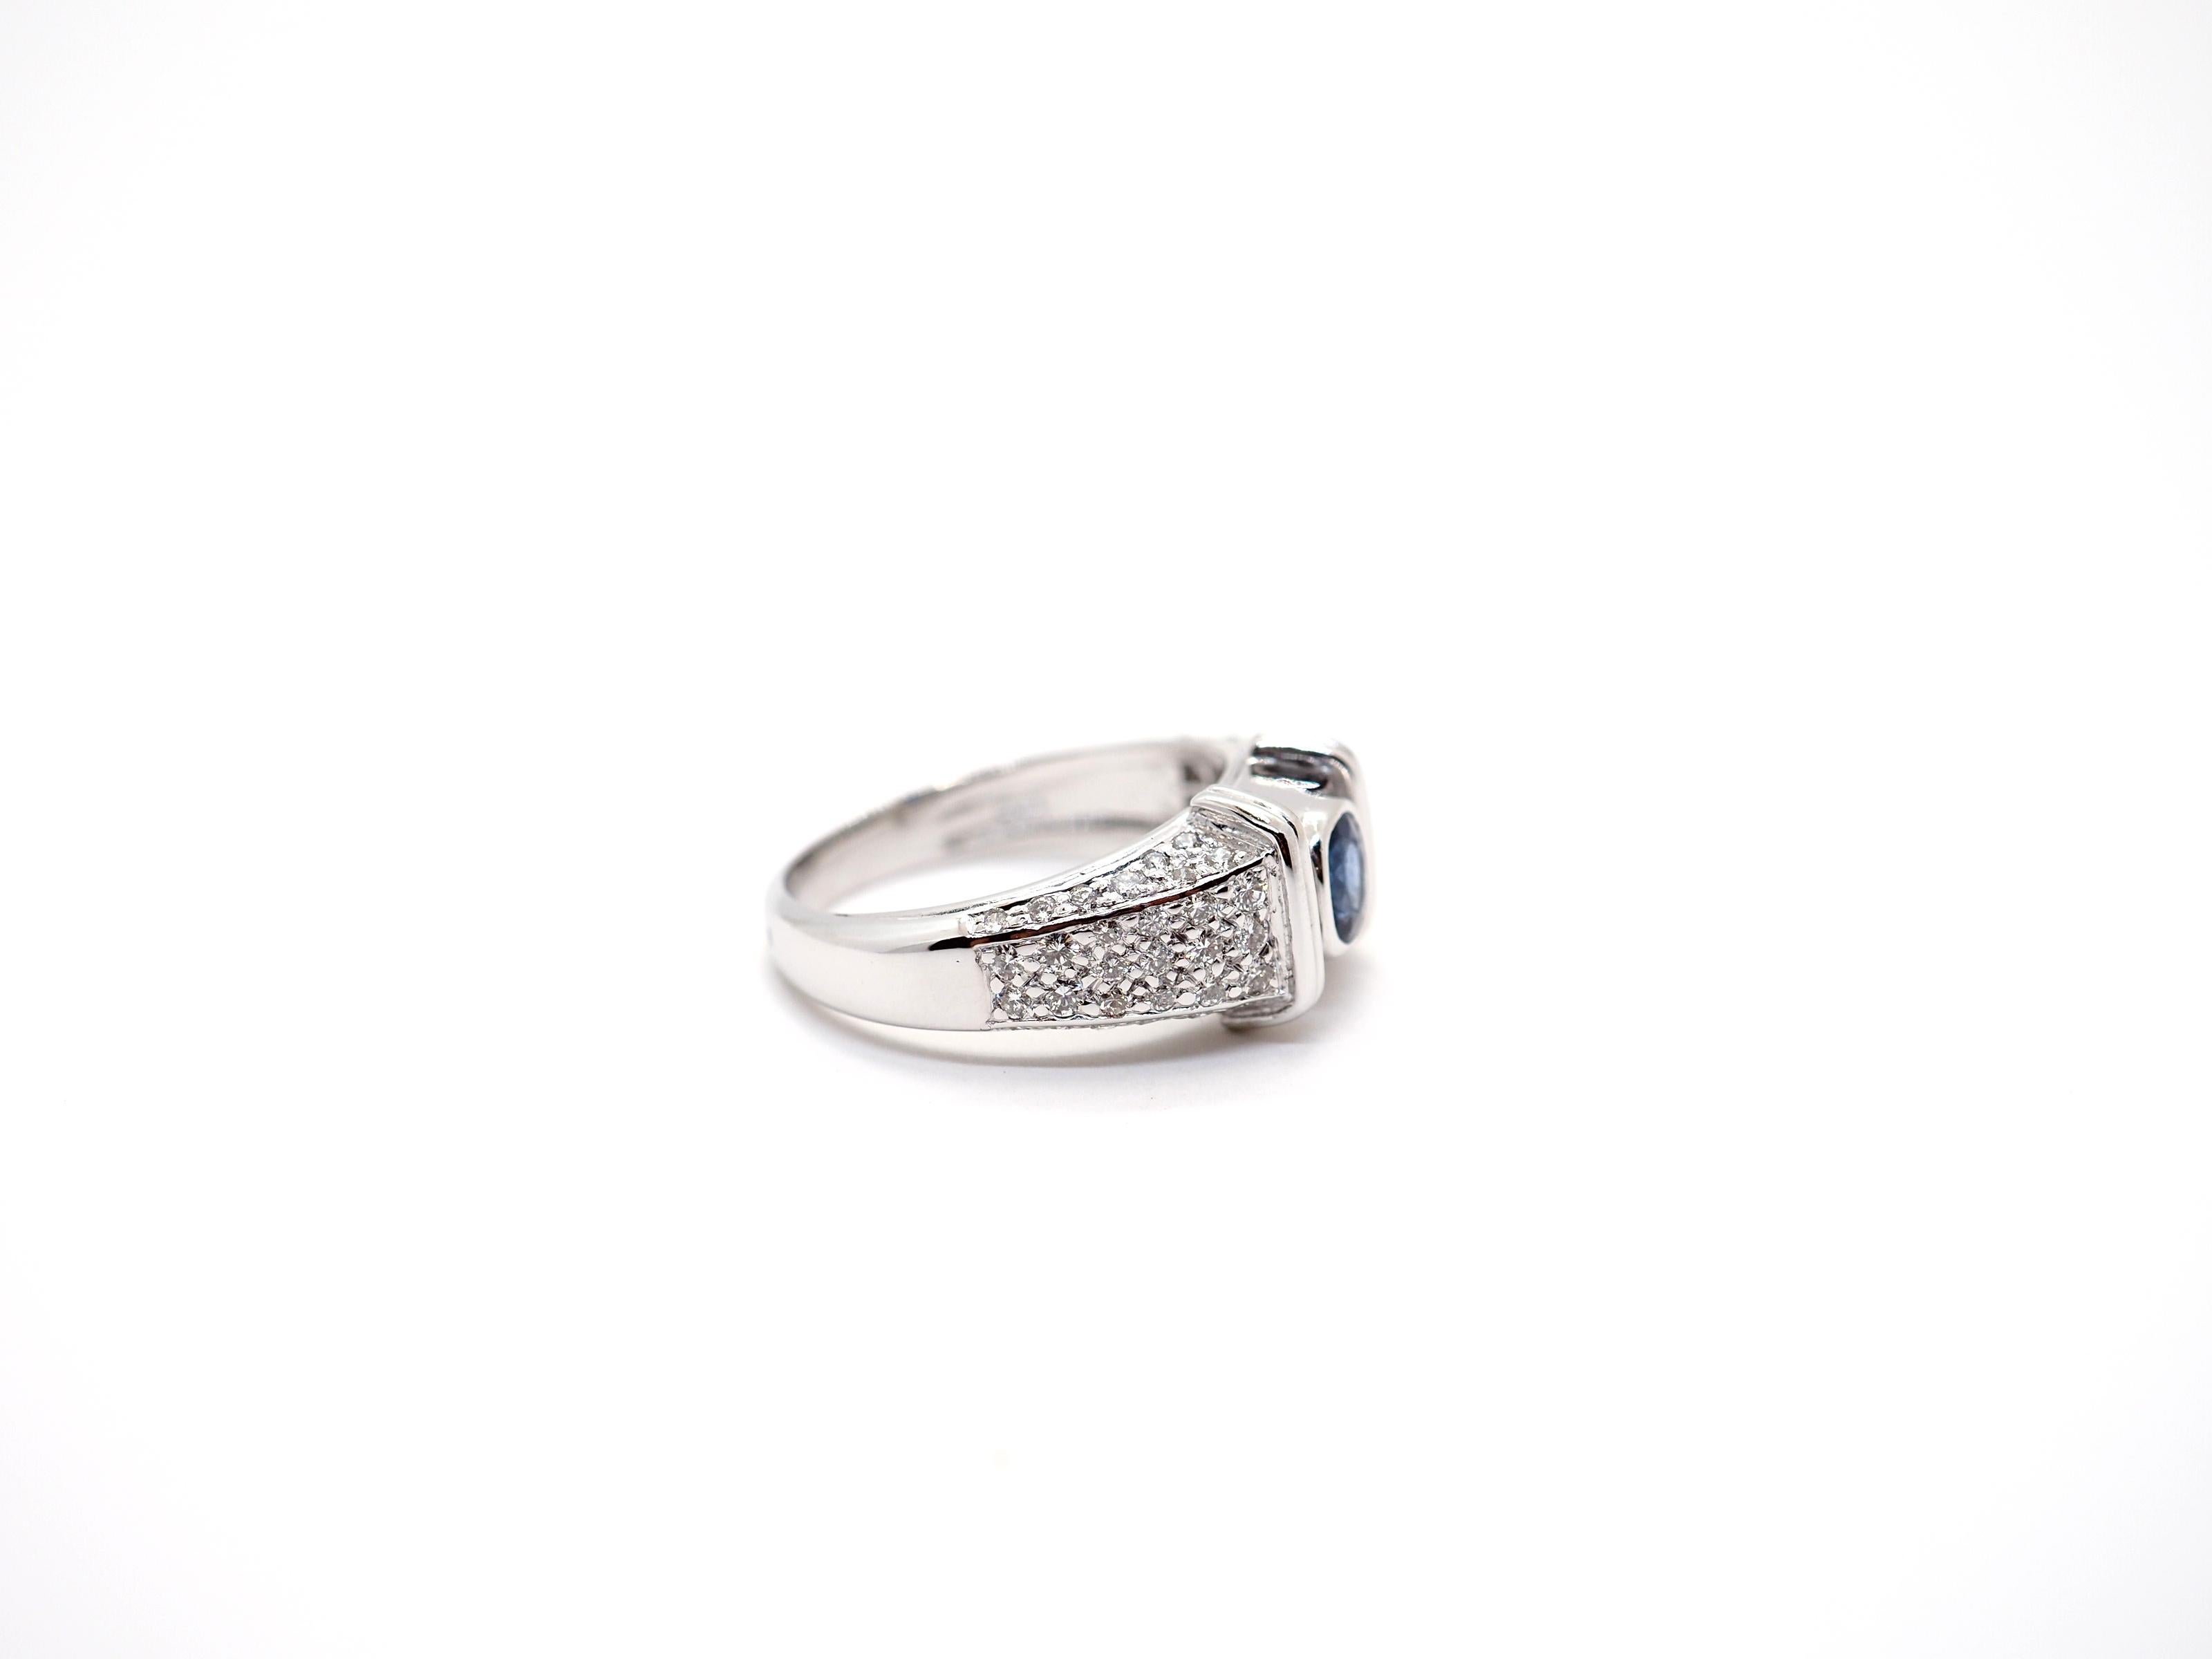 Ein schöner Klassiker  Saphir- und Diamantring aus 18 K. Weißgold, mit einem ovalen blauen Saphir von 3,82 mm x 4,75 mm in der Mitte und rund geschliffenen Diamanten auf dem Ring, um ihn noch mehr hervorzuheben, insgesamt 1,28 Karat. 

Gesamtgewicht